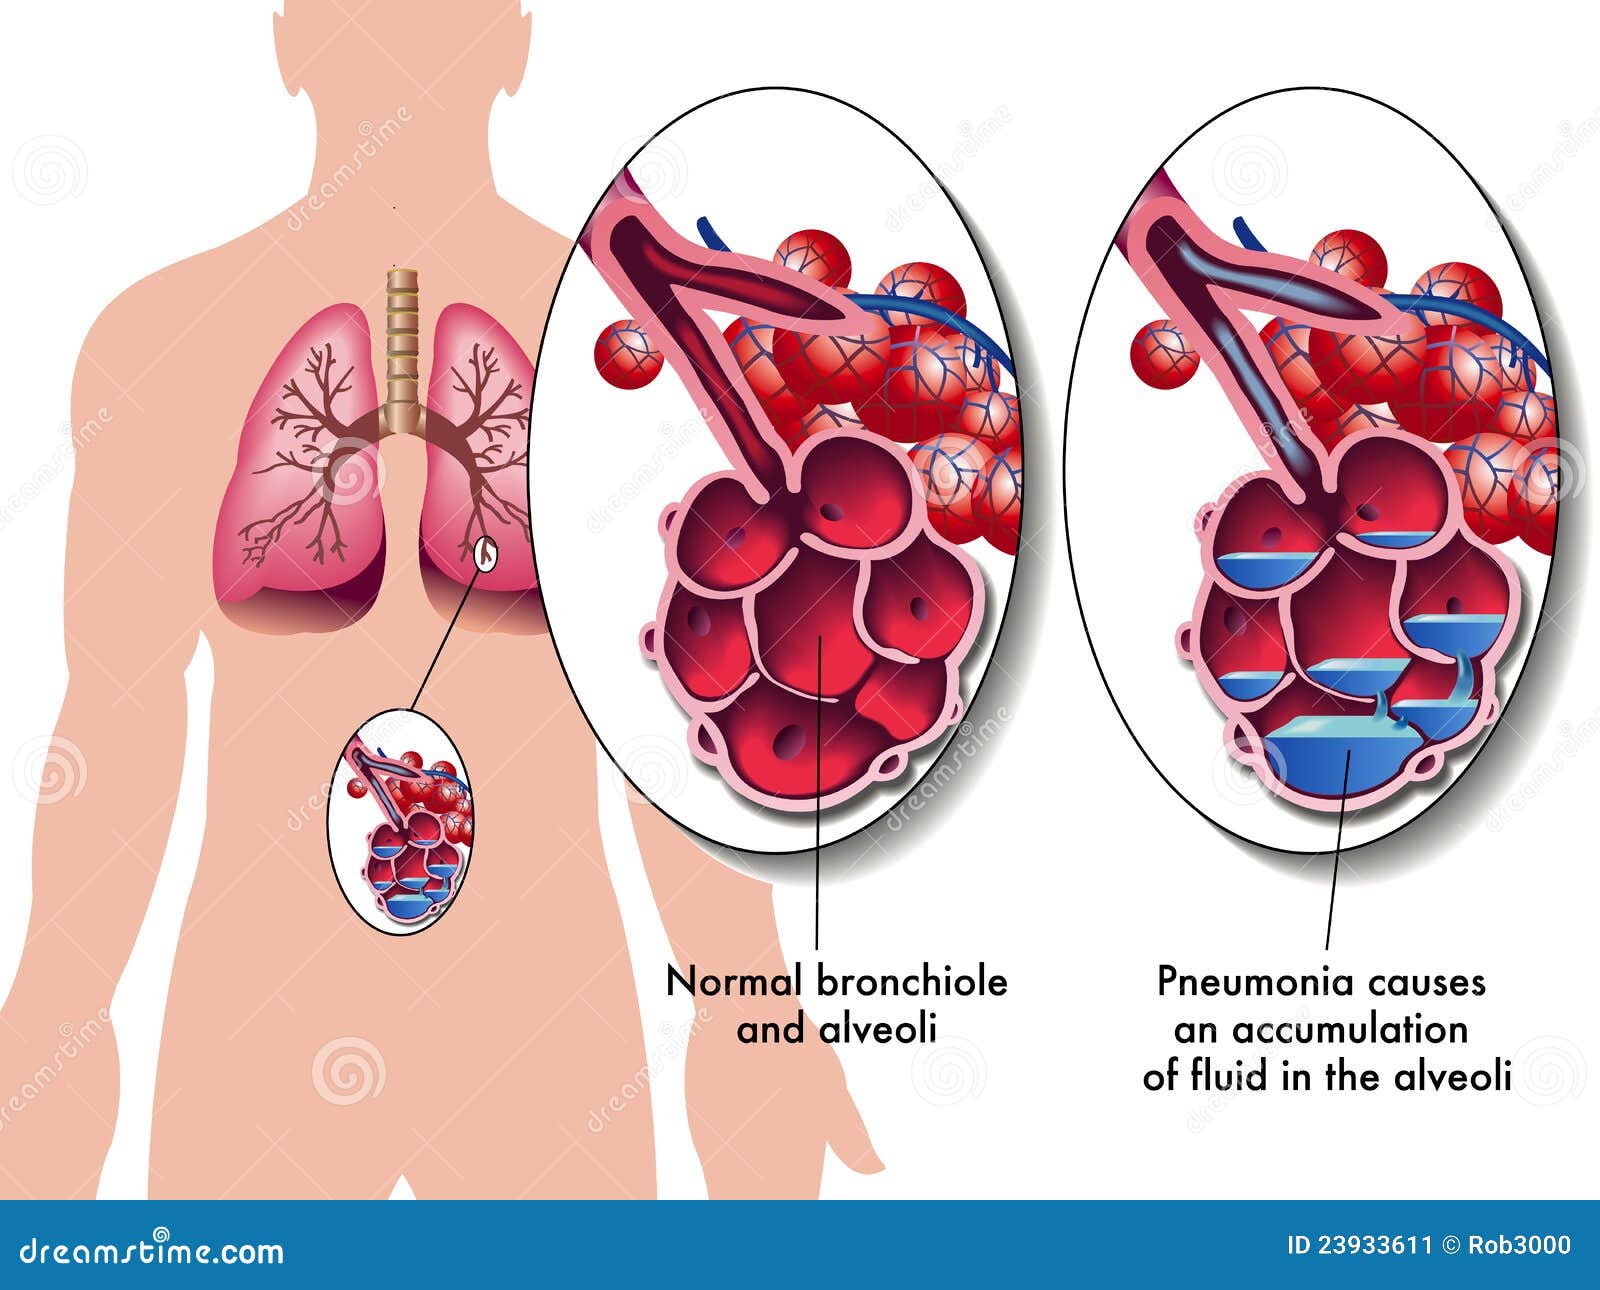 Pneumonia Stock Image - Image: 23933611